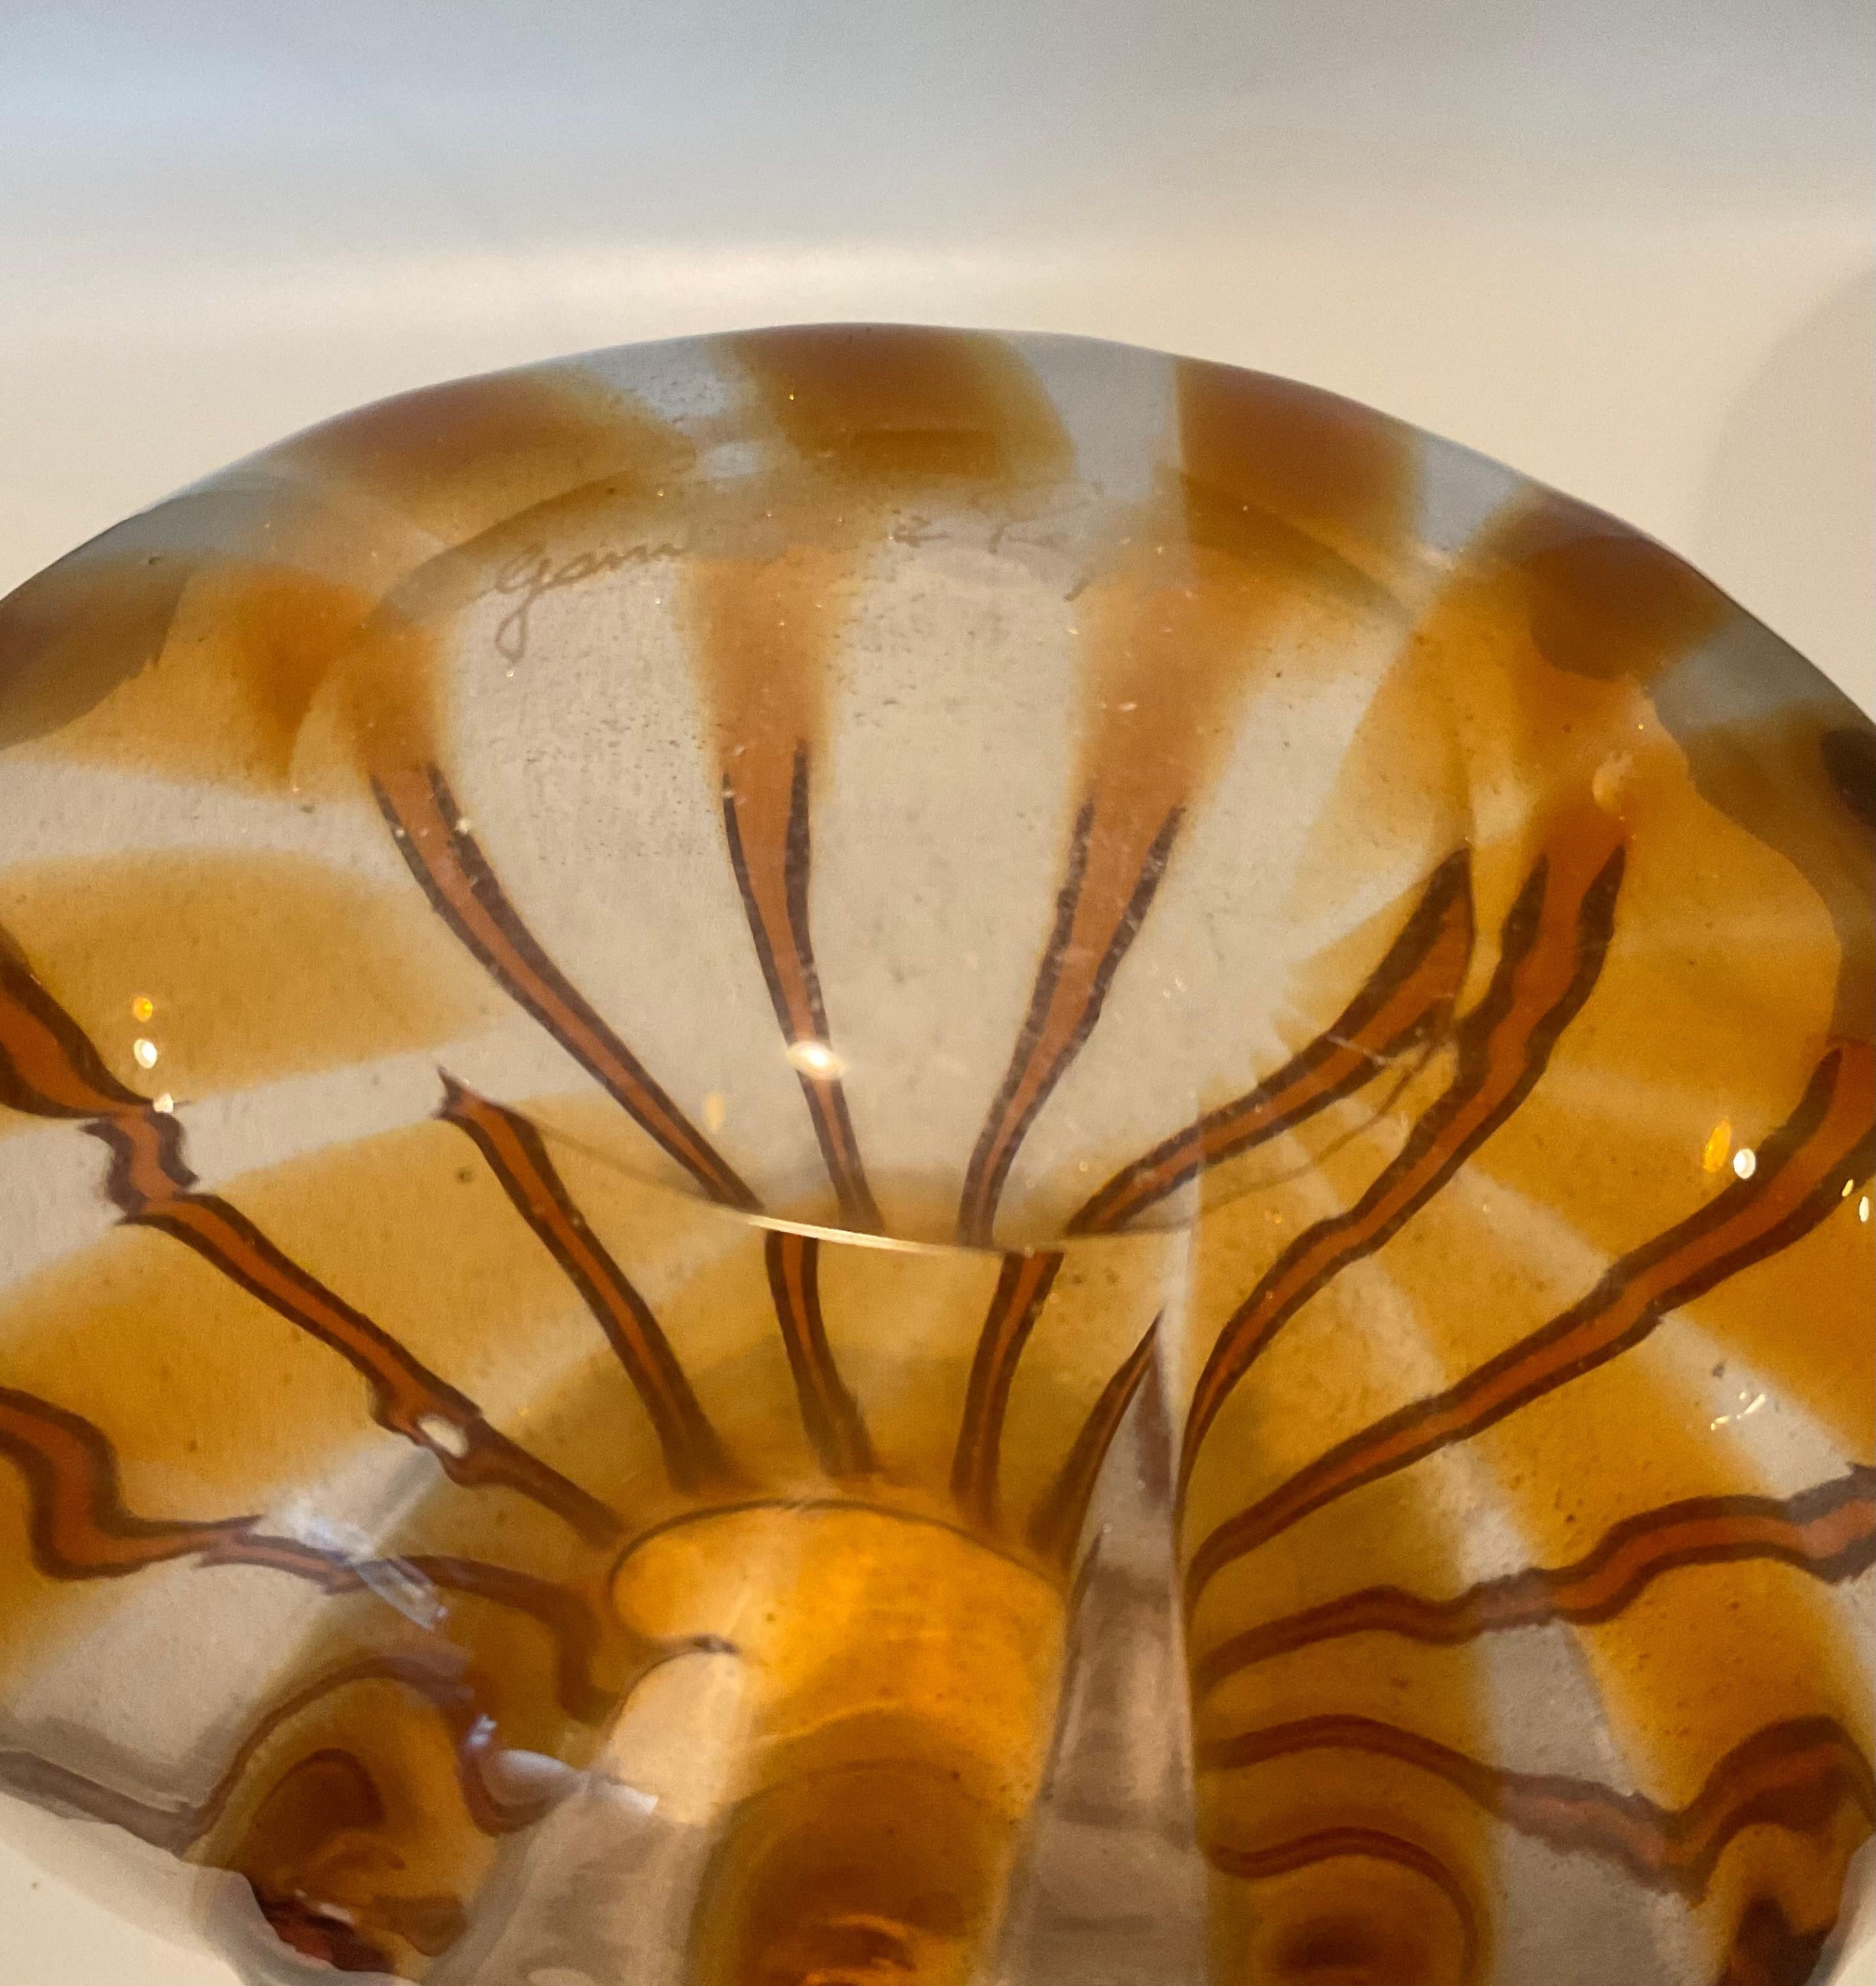 Gambaro und Poggi Large Murano Gold Art Glass Vase Artist Signed ein Skript auf dem Boden, plus 2 Original-Labels. Beachten Sie die aufgesetzten Glasbänder und das Blattgold, das die Vase hervorhebt. 